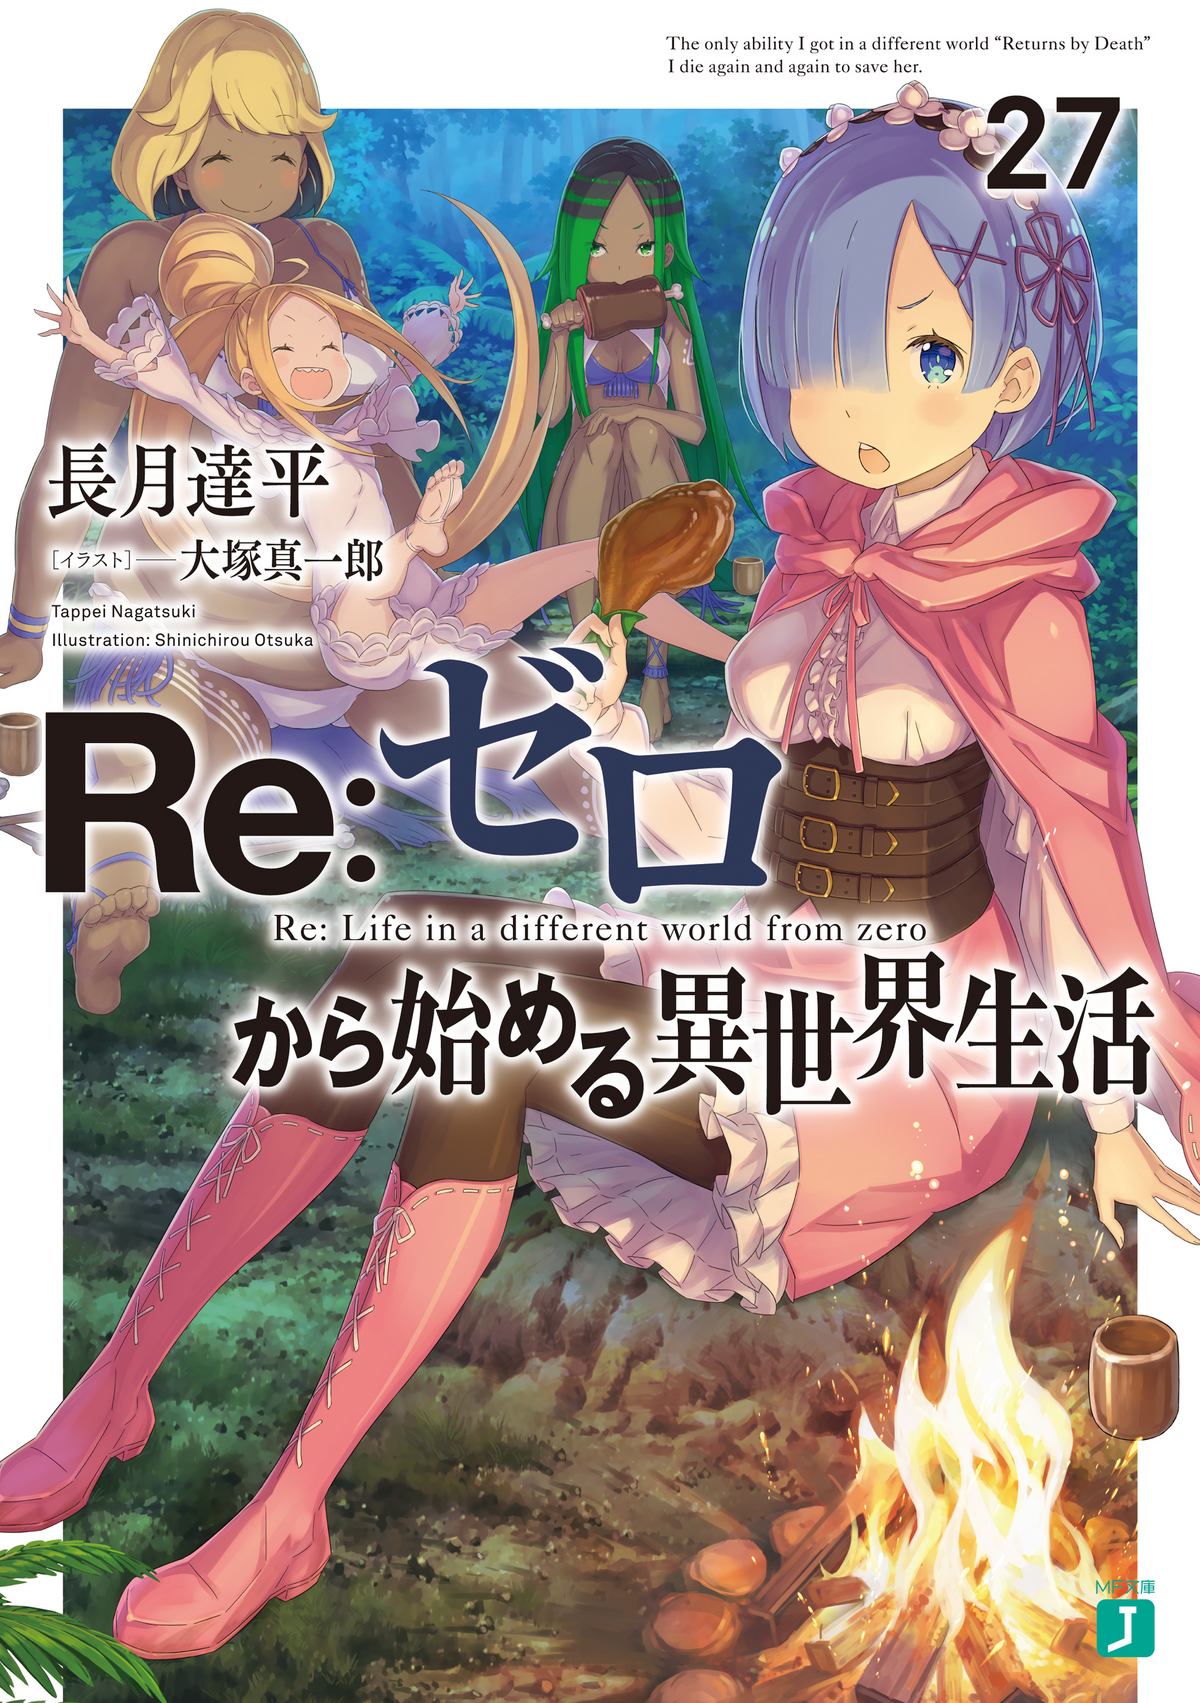 Re:Zero Light Novel Volume 27 | Re:Zero Wiki | Fandom